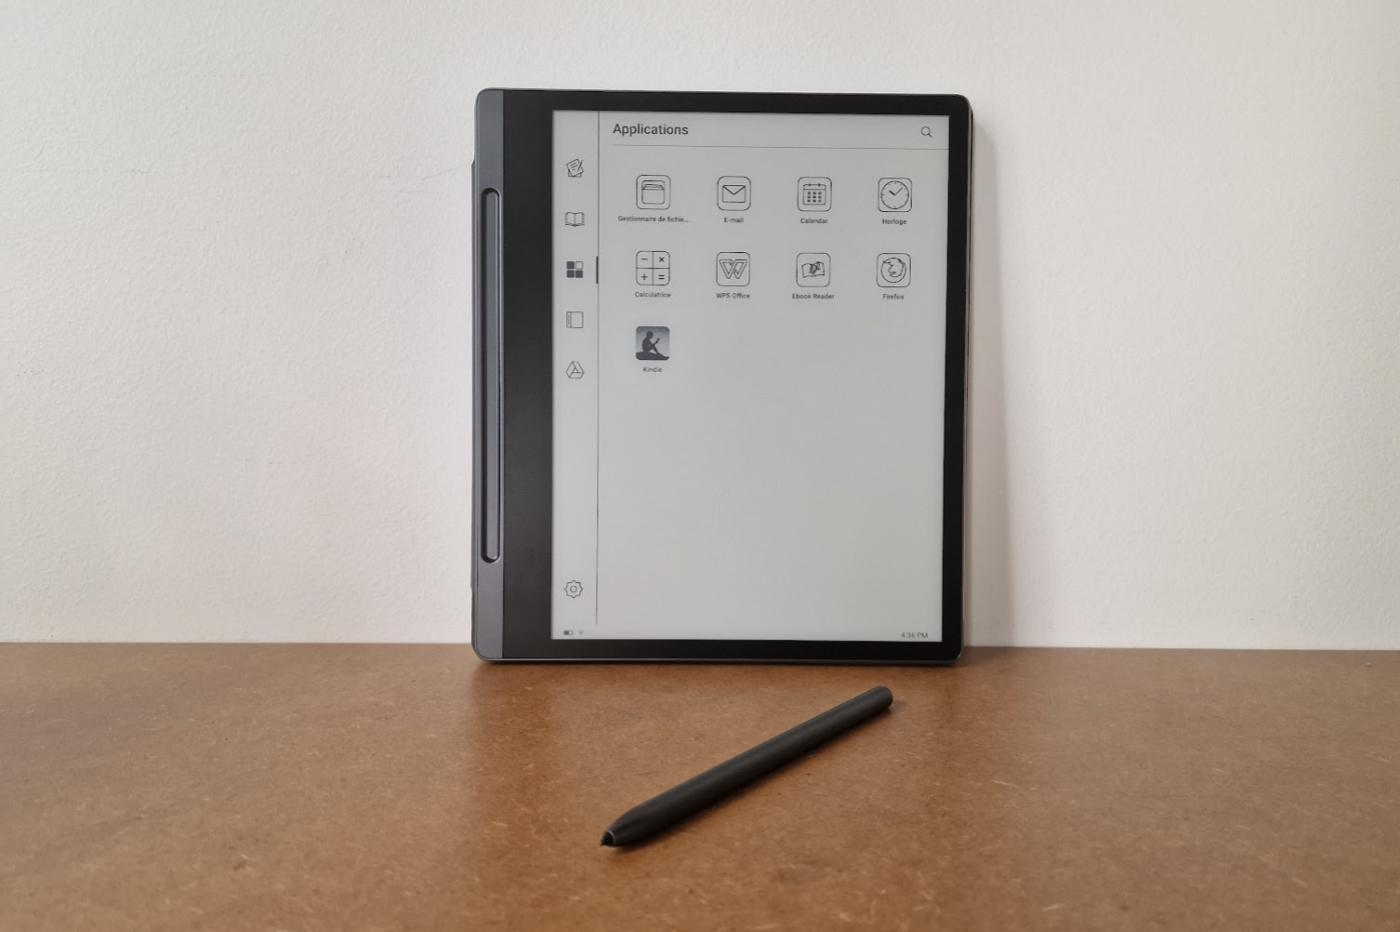 Test - Kindle Paperwhite : la liseuse milieu de gamme d